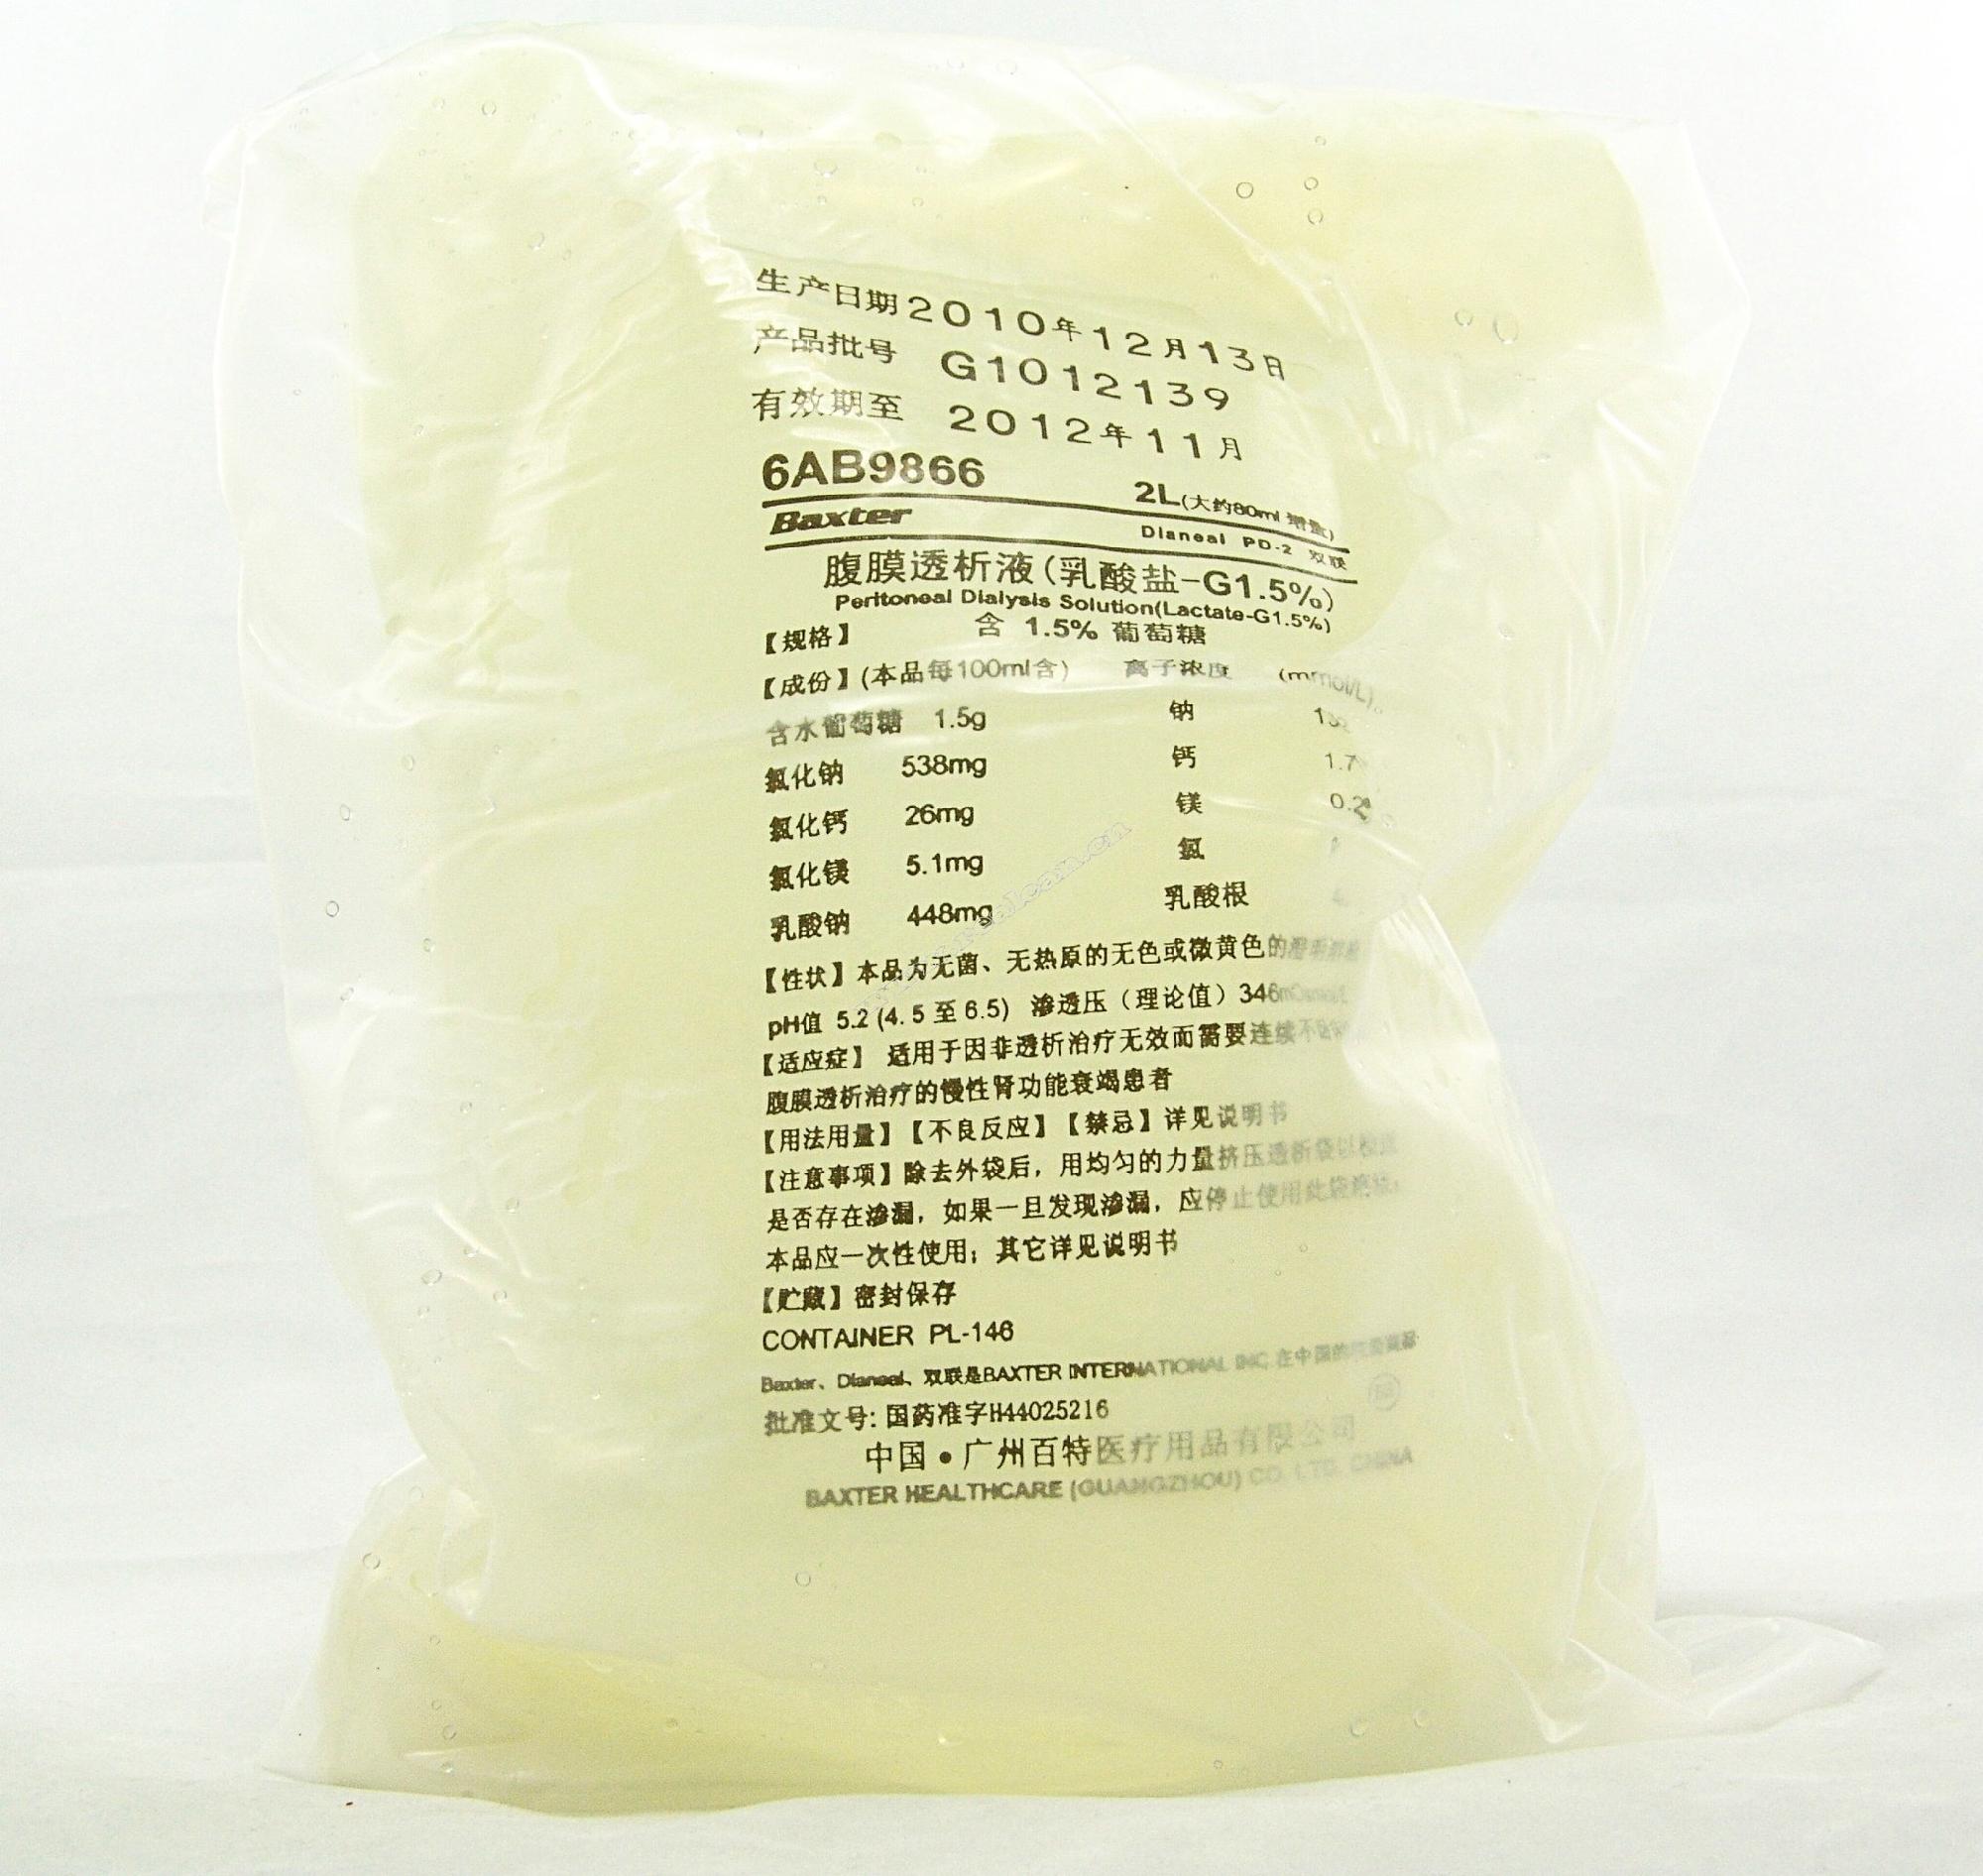 【百特】腹膜透析液(乳酸盐-G2.5%)-广州百特医疗用品有限公司